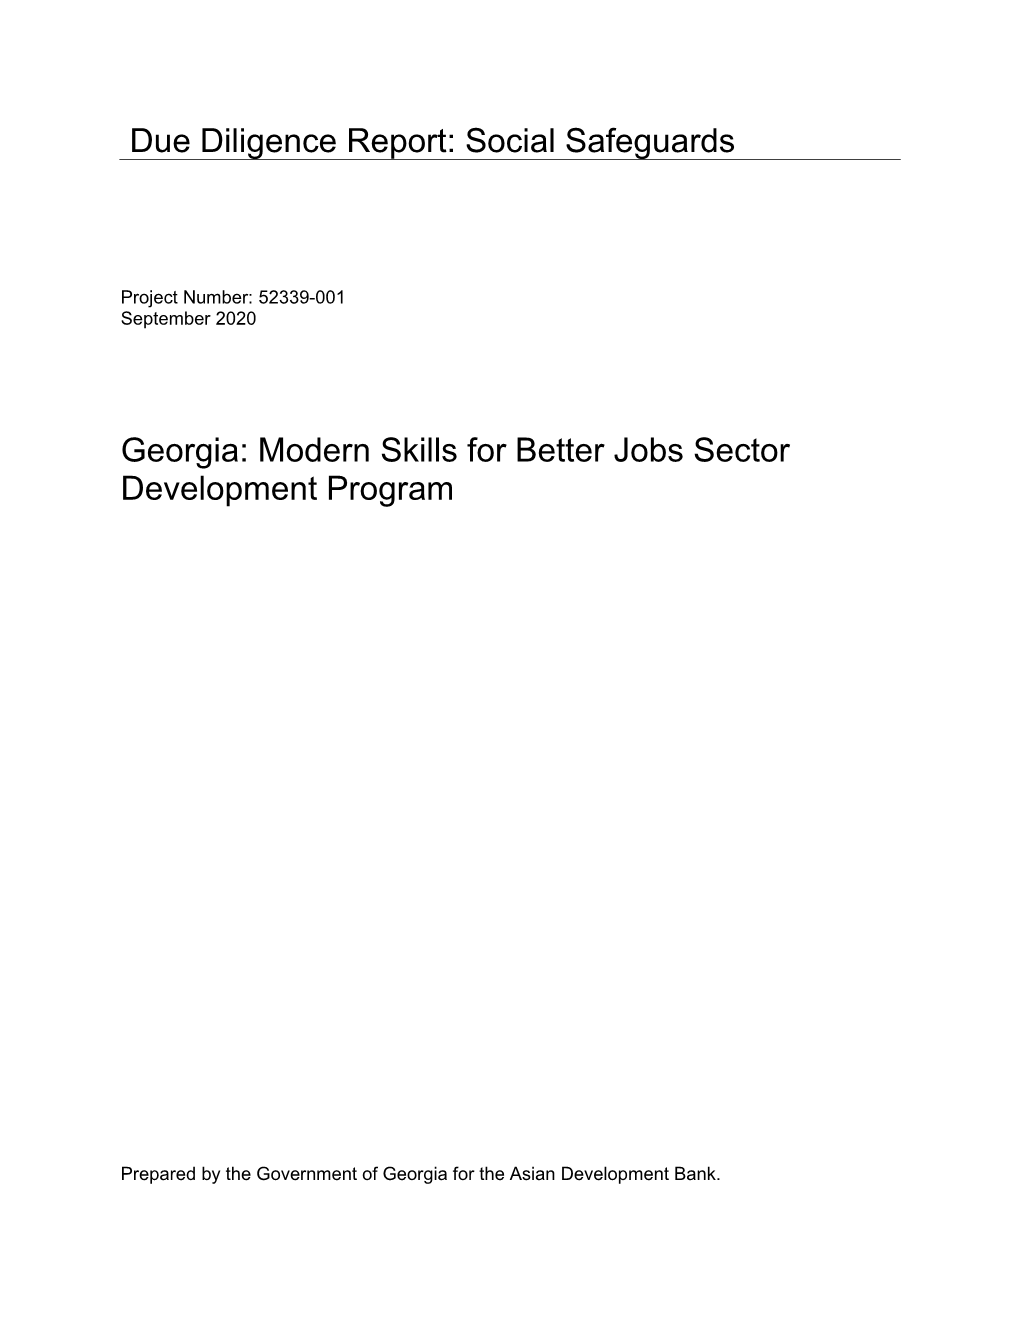 52339-001: Modern Skills for Better Jobs Sector Development Program